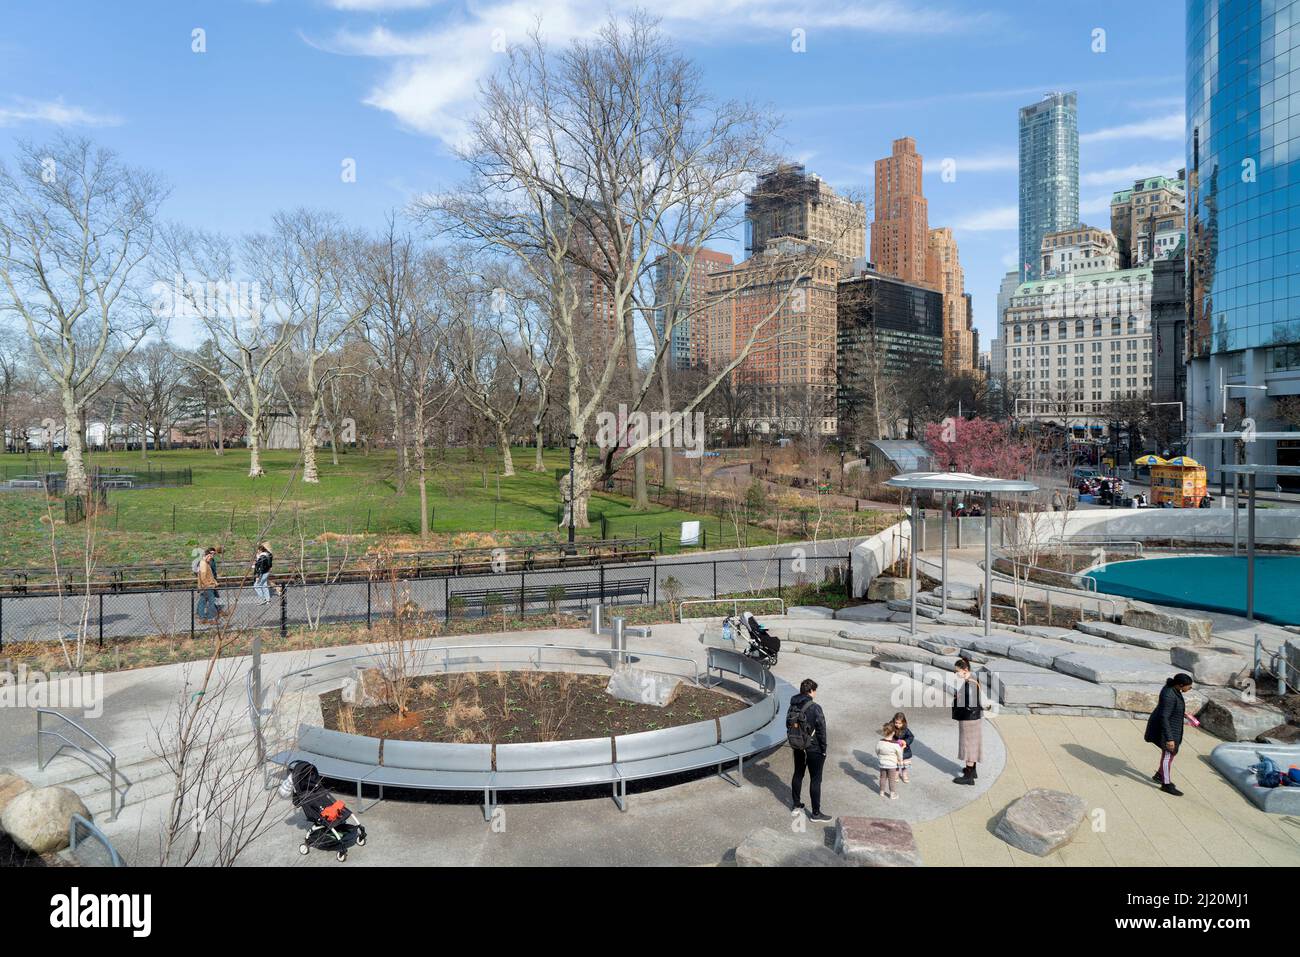 Die Battery Playscape wurde am 16. Dezember 2021 in The Battery, einem 25 Hektar großen öffentlichen Park am südlichen Ende von Manhattan, der Öffentlichkeit zugänglich gemacht. Stockfoto